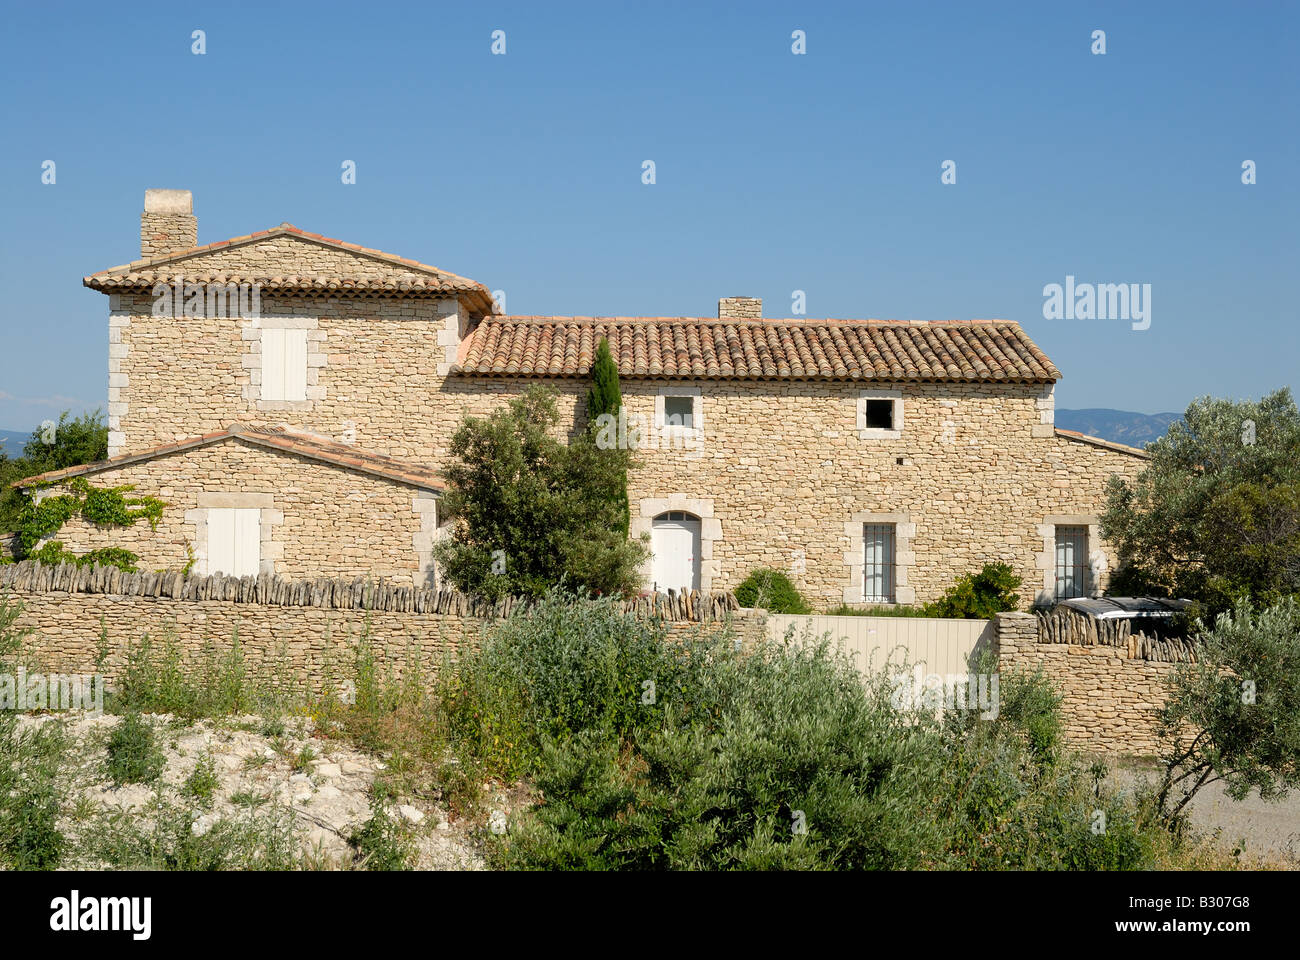 Maison rurale dans la Provence, France Banque D'Images